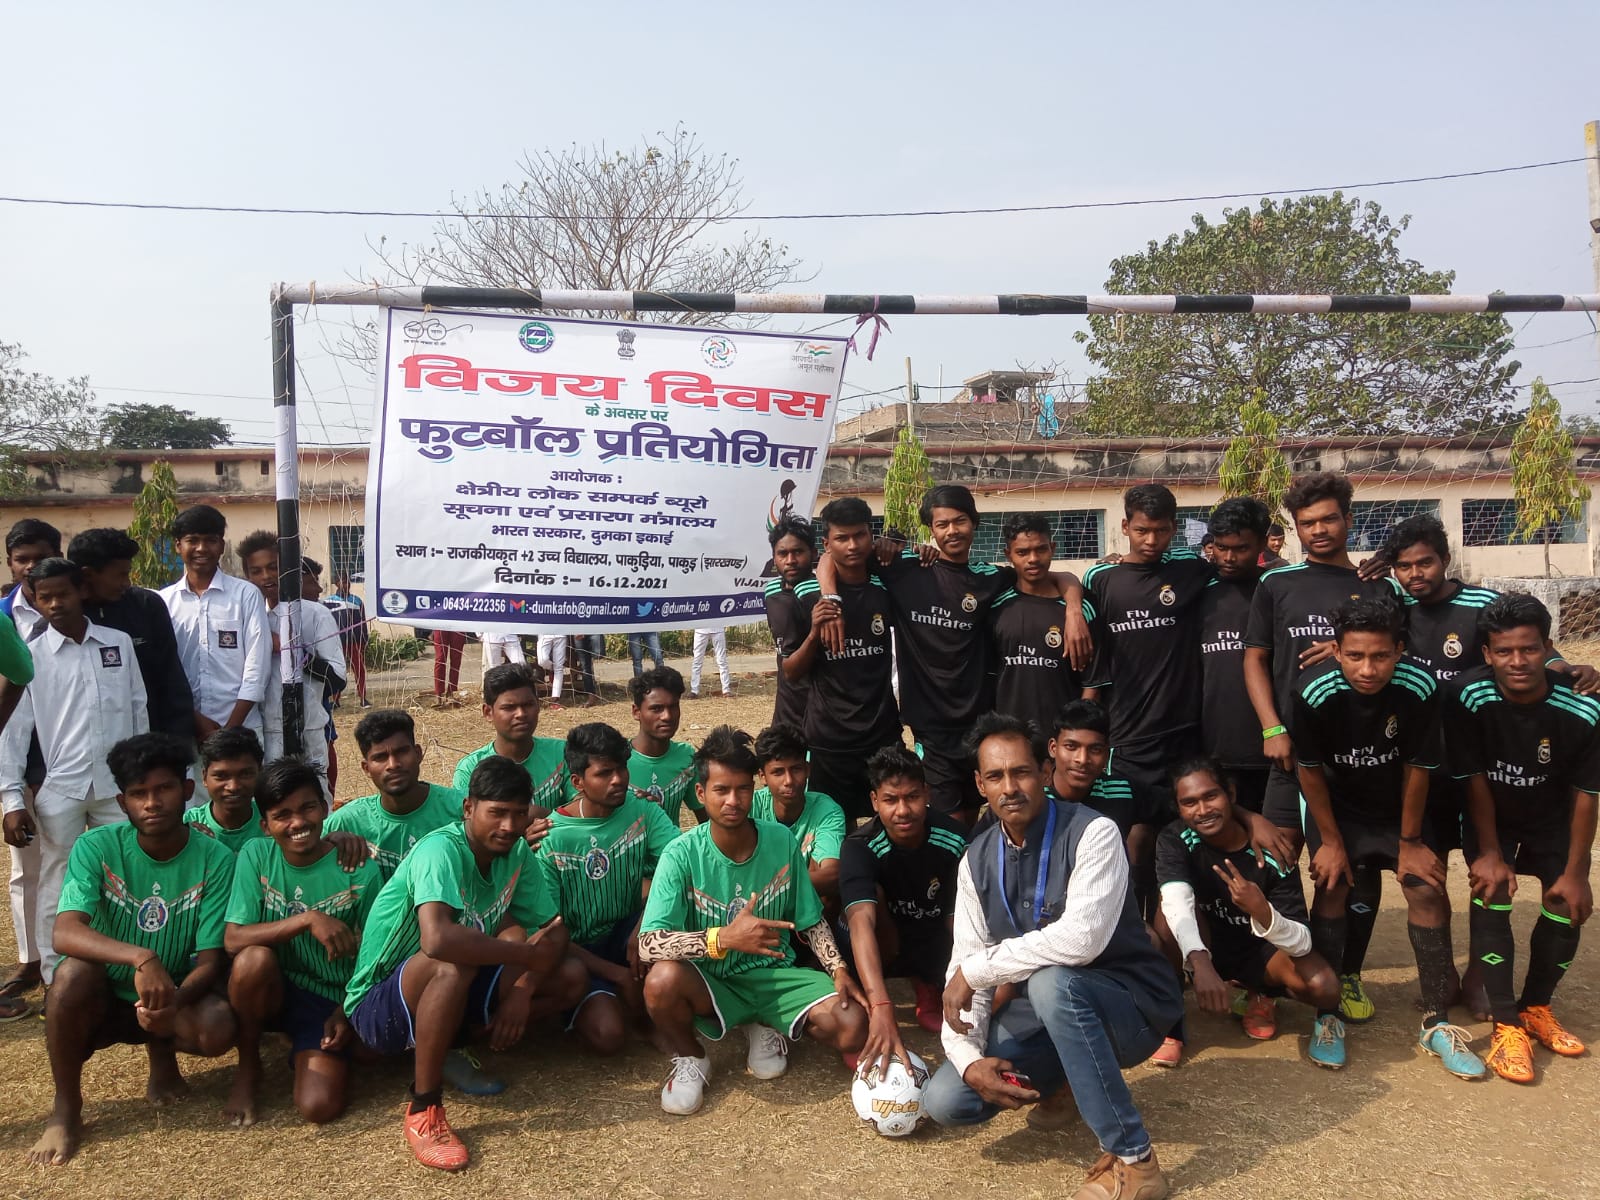 विजय दिवस के अवसर पर झारखंड में फुटबॉल मैच तथा रंगोली प्रतियोगिता का आयोजन